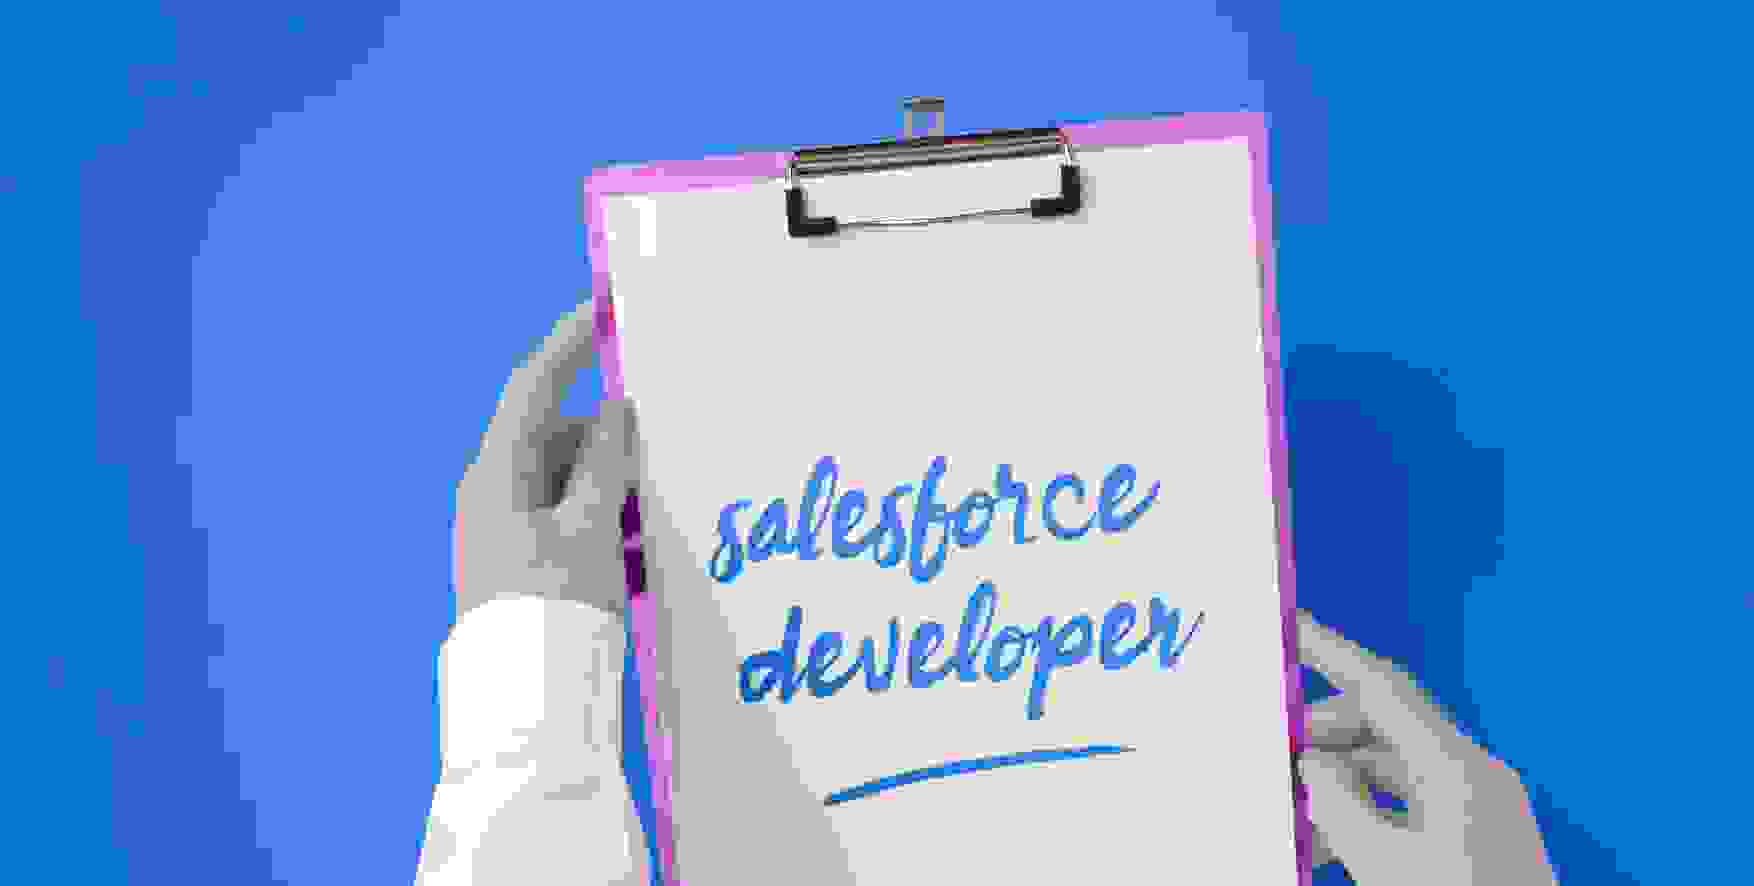 Salesforce developer written on a piece of paper in a clipboard